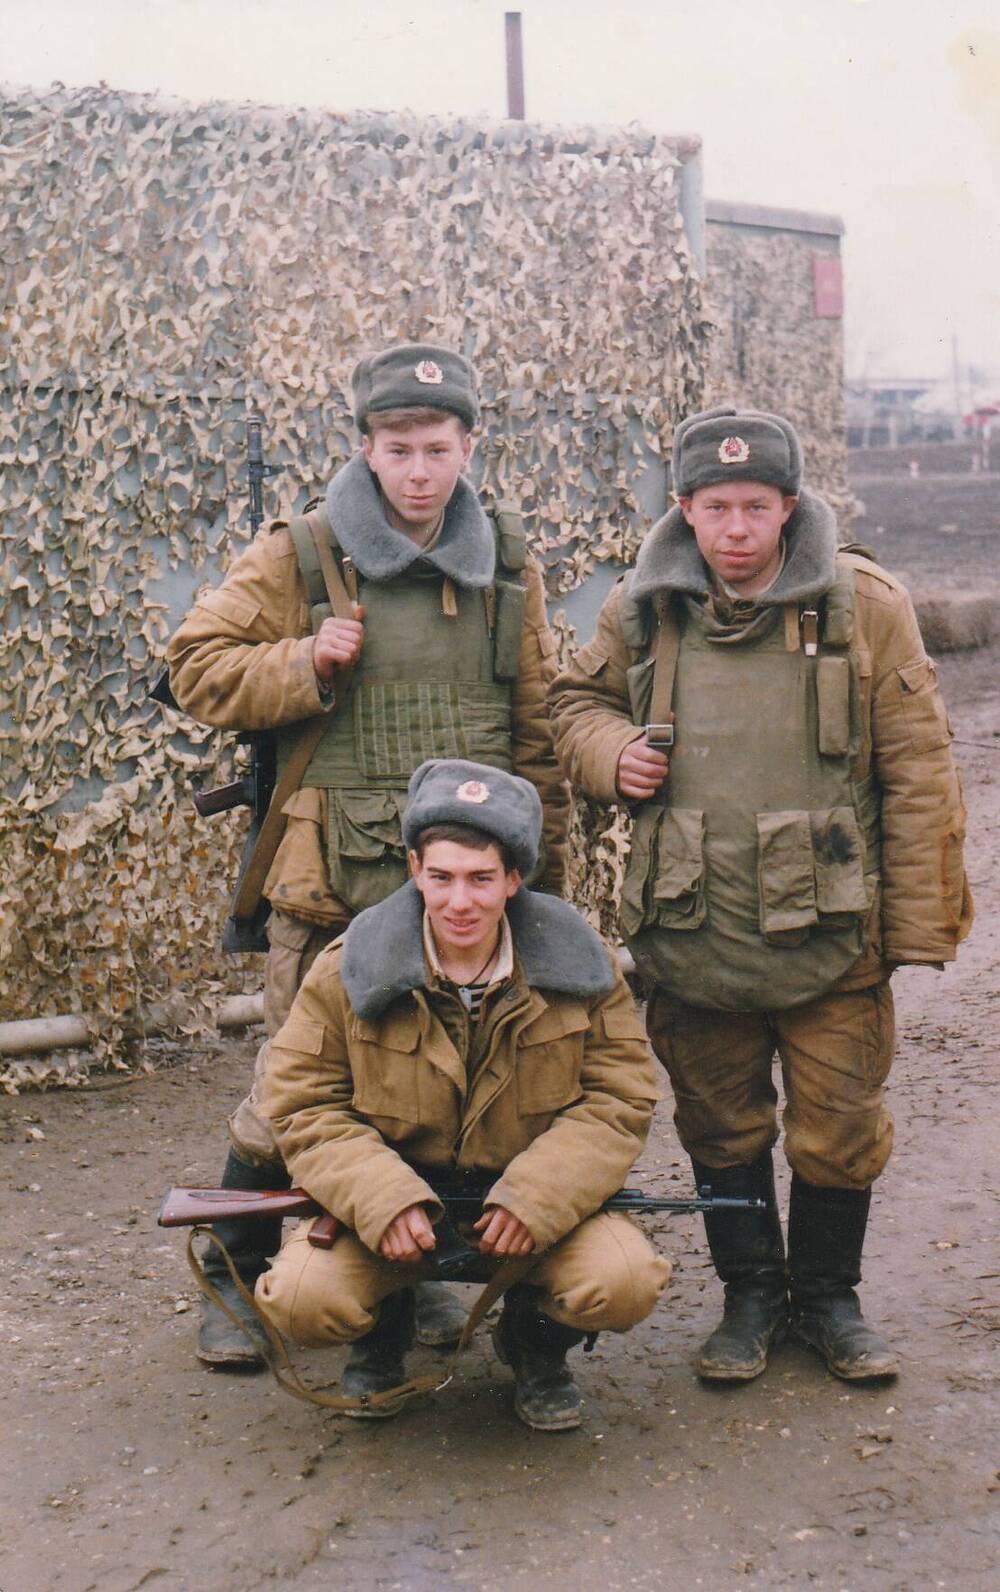 Фотография Бажана Бориса Борисовича (в центре) с сослуживцами во время прохождения службы в Чеченской Республике 1995-1996 гг.